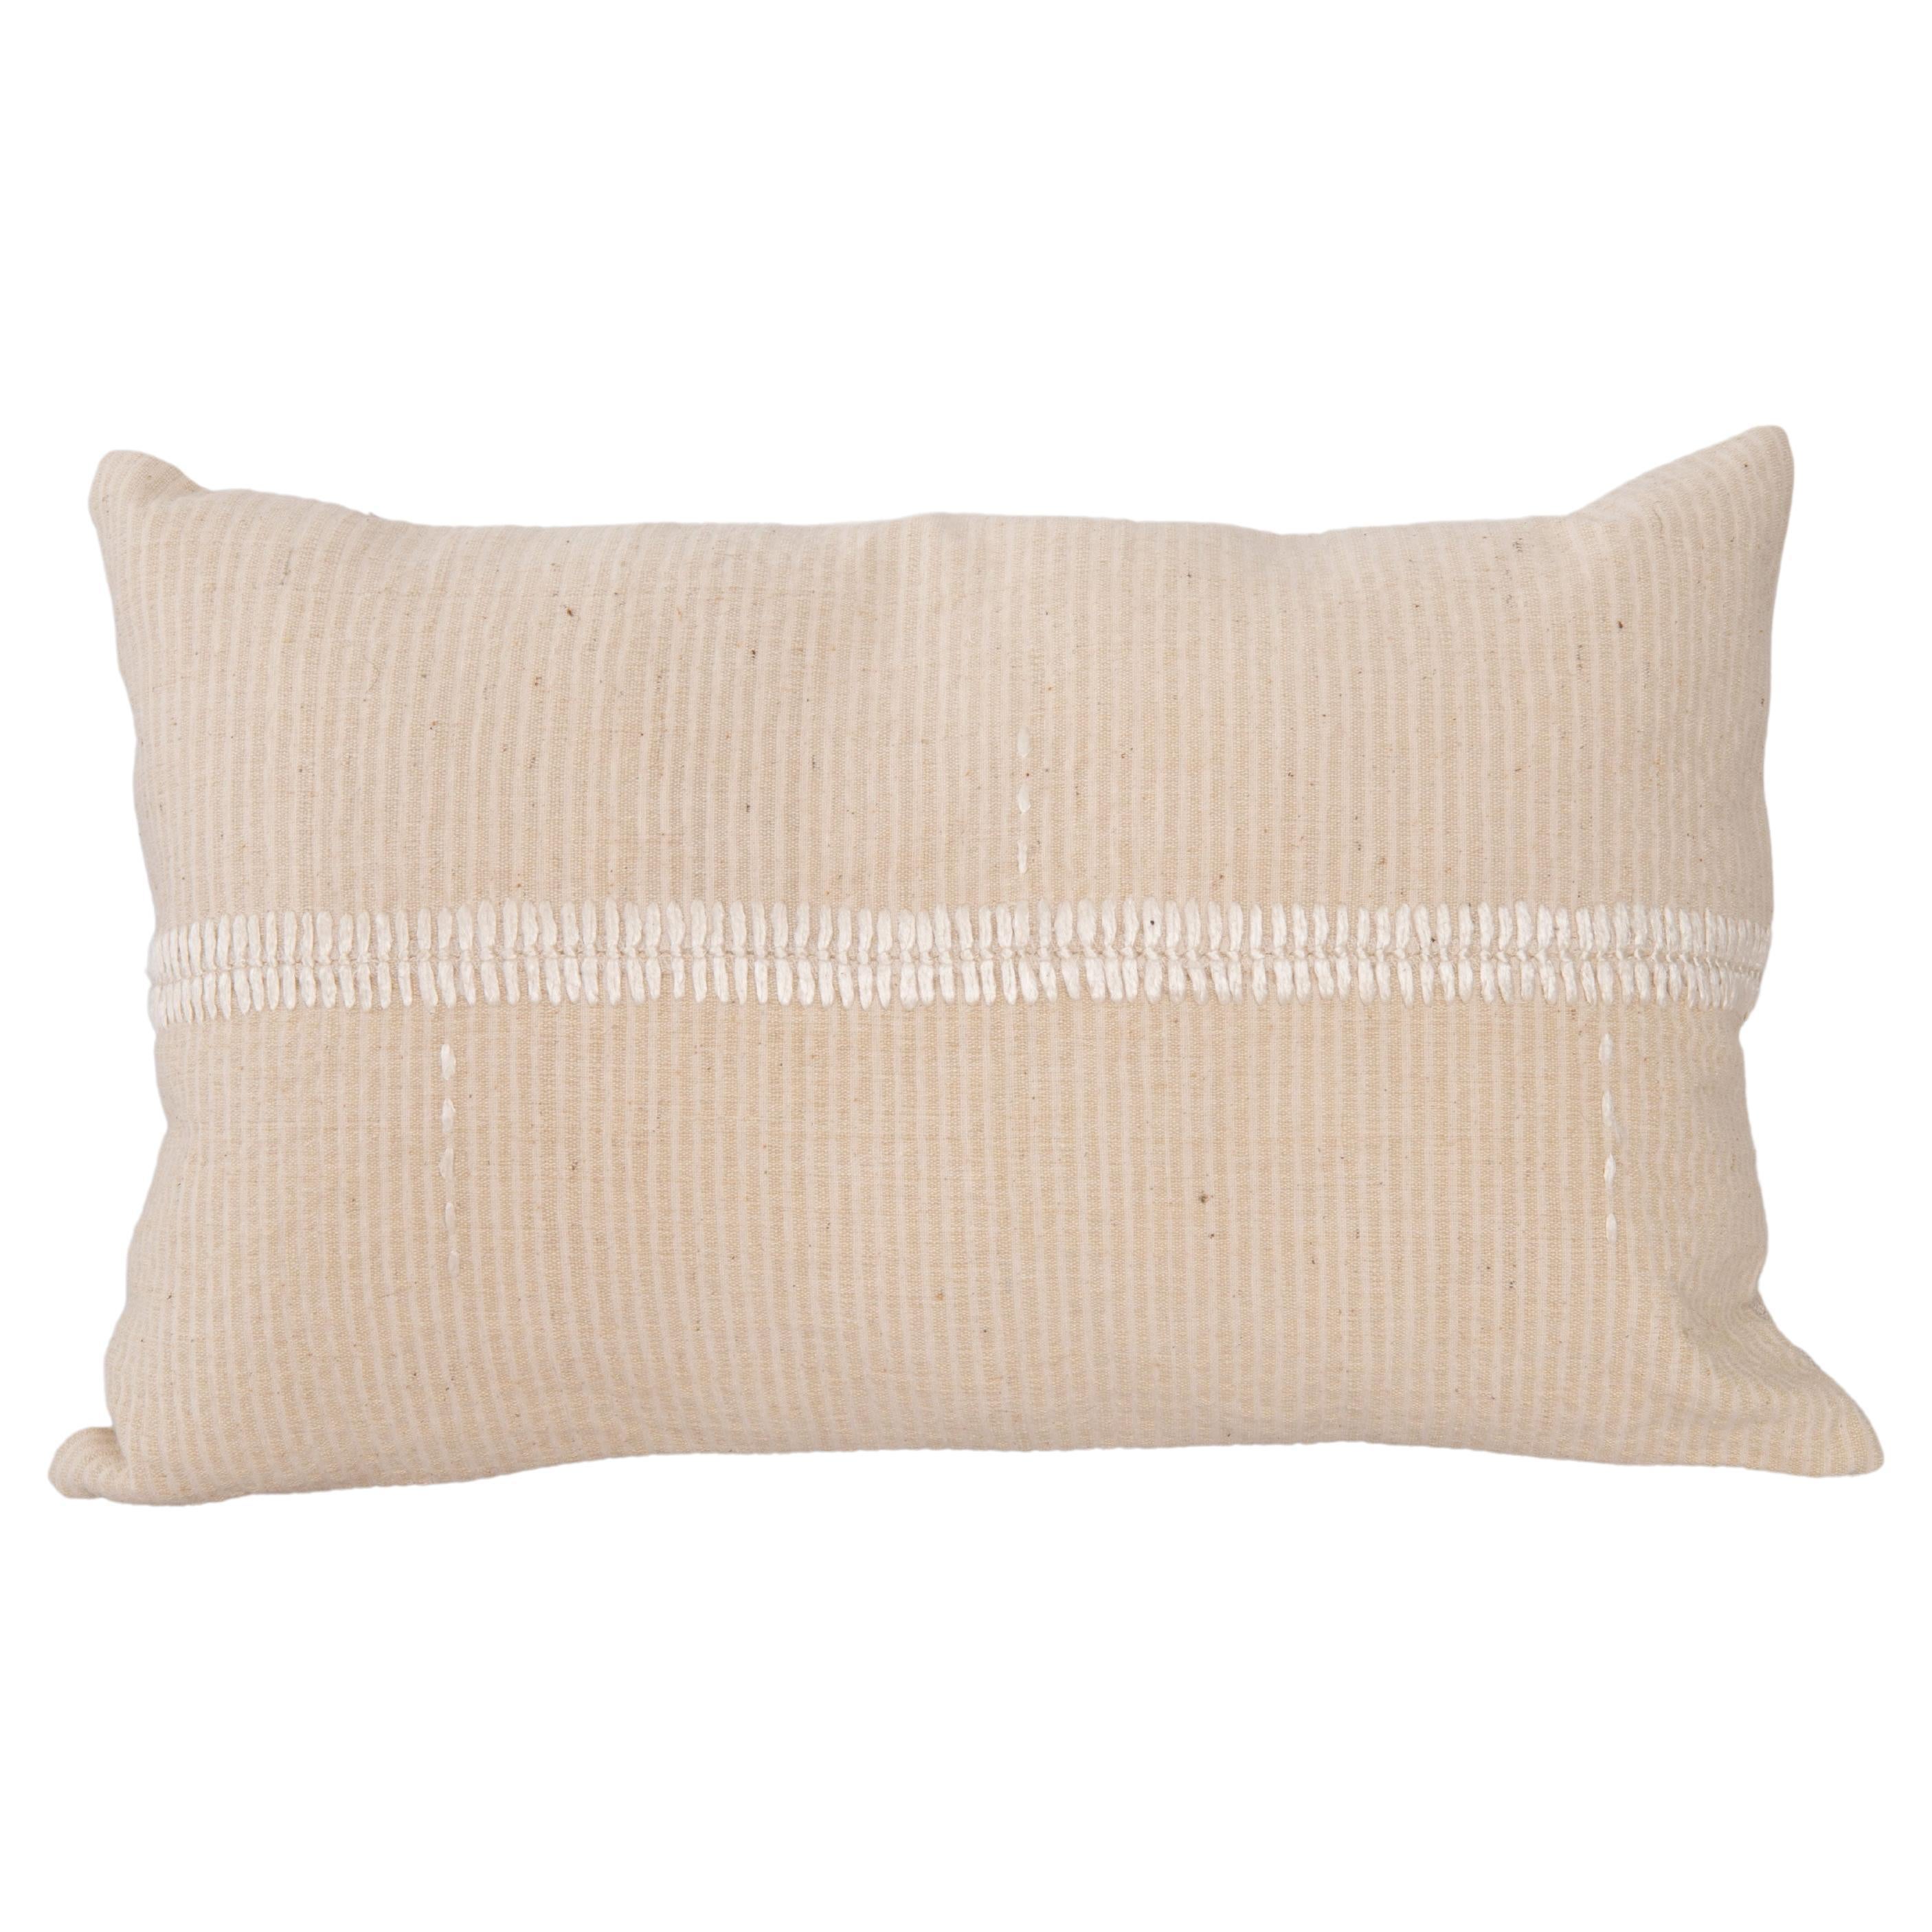 Mid 20th C. Pillow Cover Made from Vintage Anatolian Covers (housse de coussin du milieu du 20e siècle fabriquée à partir de couvertures anatoliennes d'époque) en vente